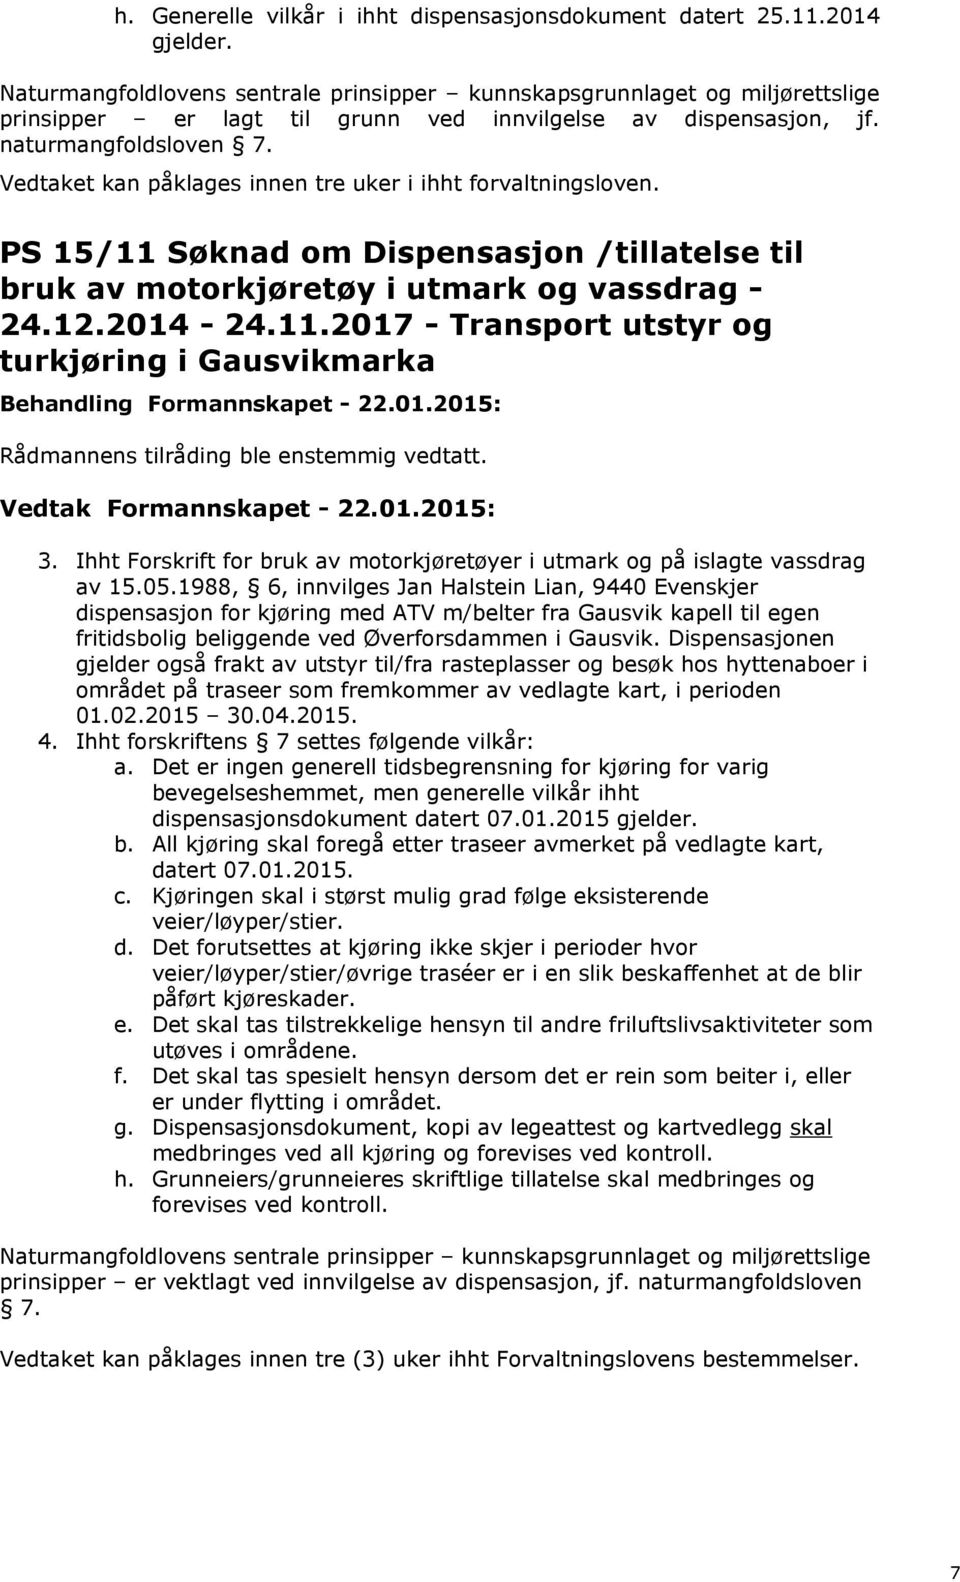 Vedtaket kan påklages innen tre uker i ihht forvaltningsloven. PS 15/11 Søknad om Dispensasjon /tillatelse til bruk av motorkjøretøy i utmark og vassdrag - 24.12.2014-24.11.2017 - Transport utstyr og turkjøring i Gausvikmarka 3.